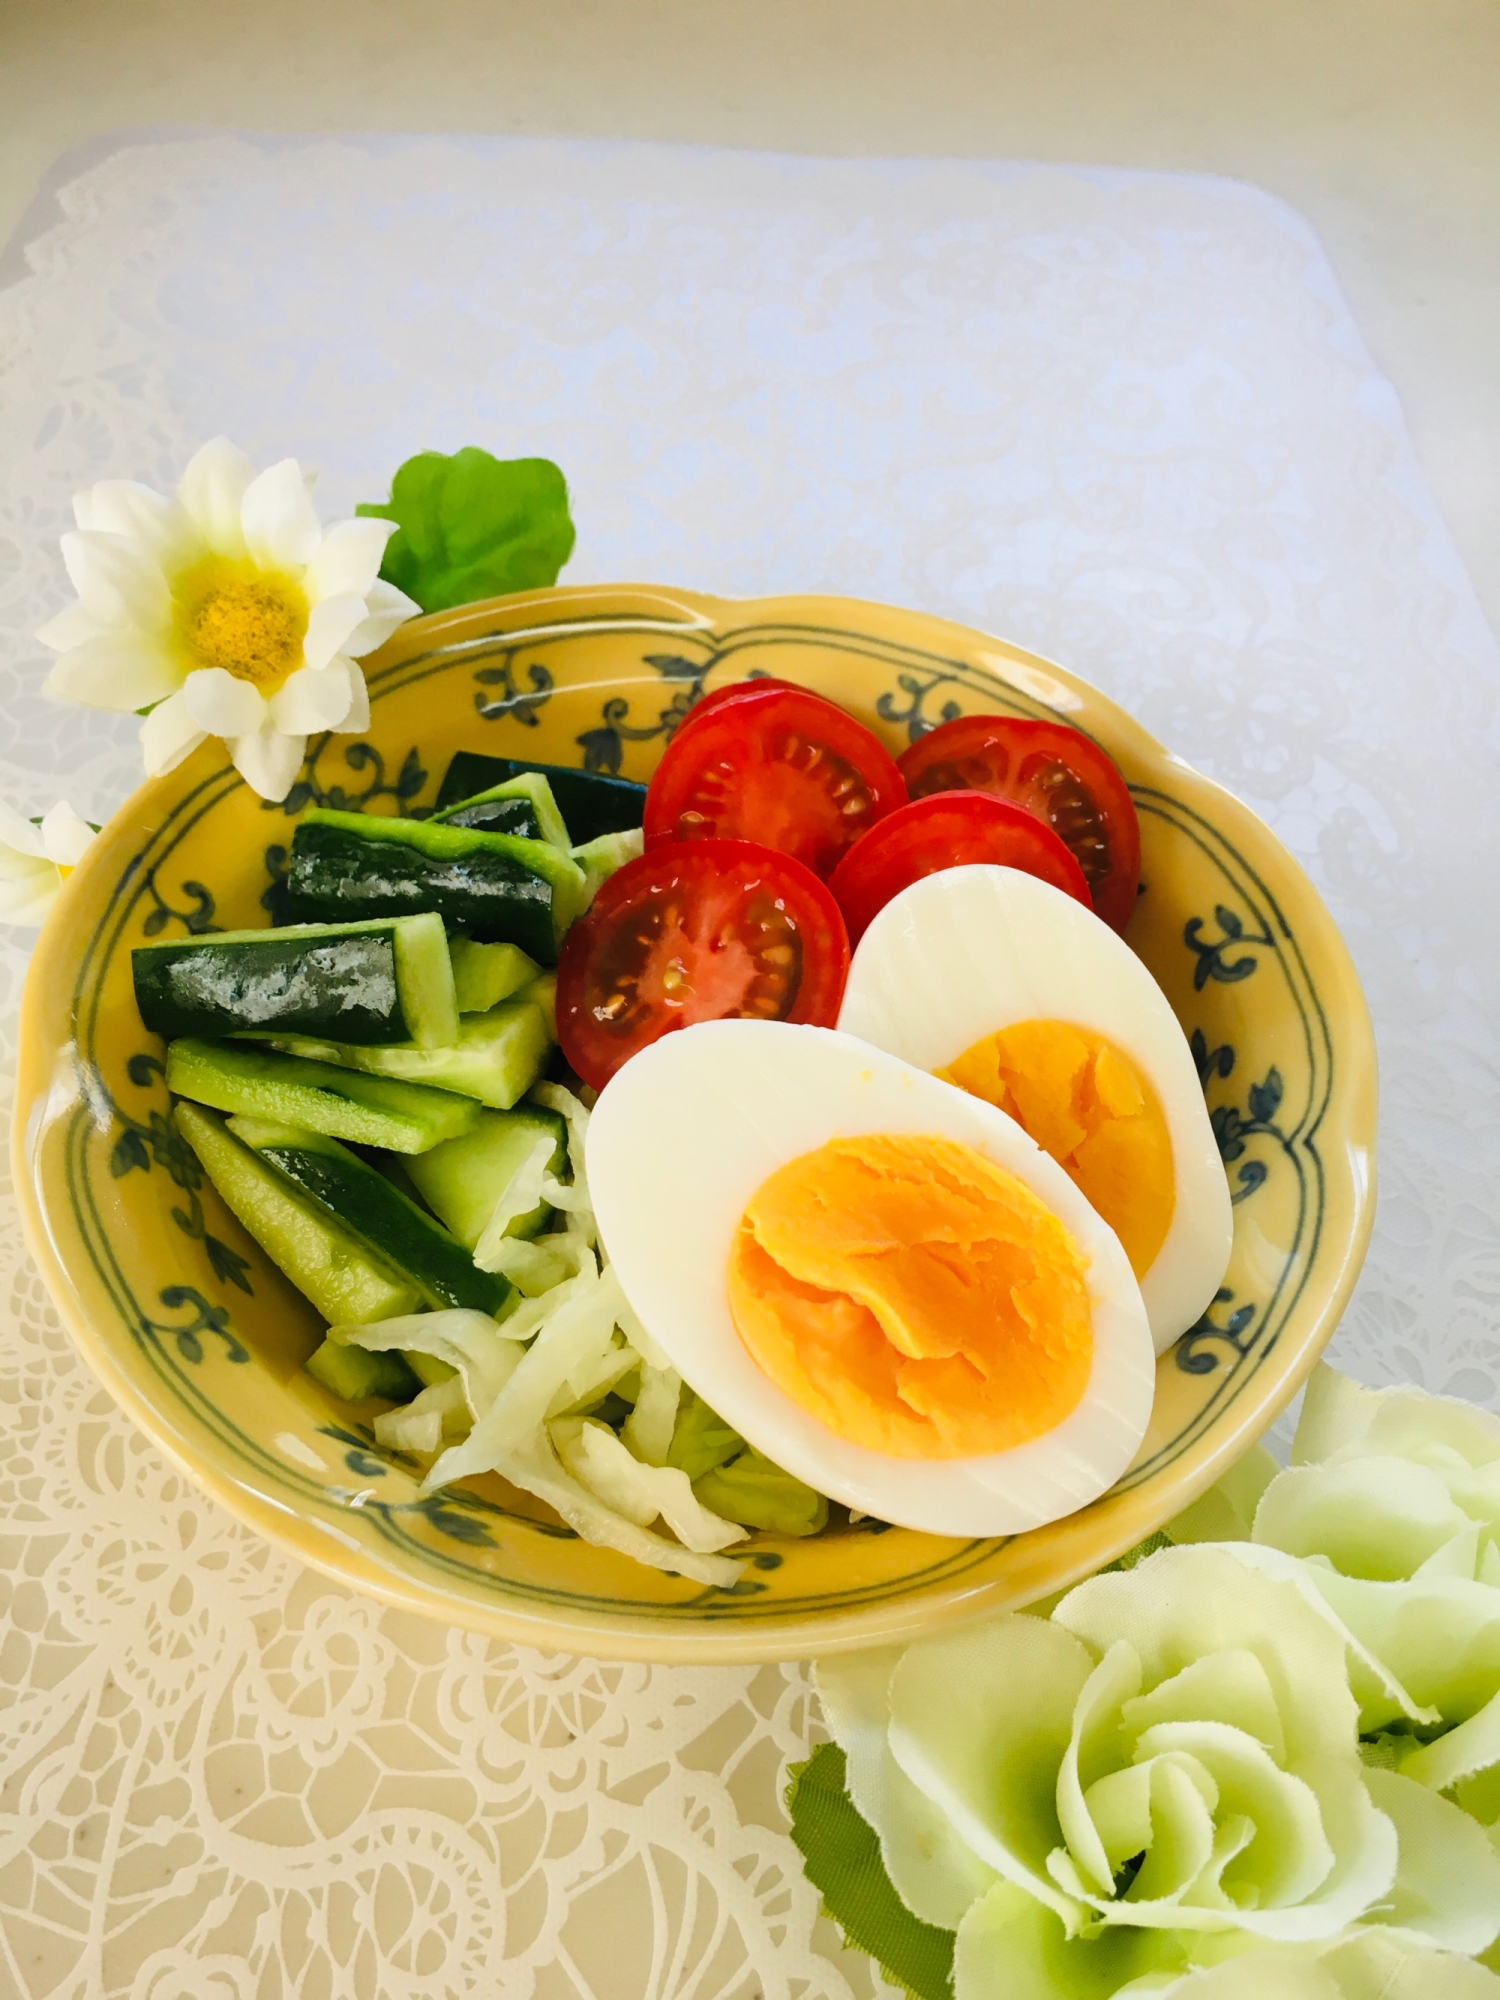 ゆで卵と野菜のサラダ レシピ 作り方 By Micchyo 楽天レシピ